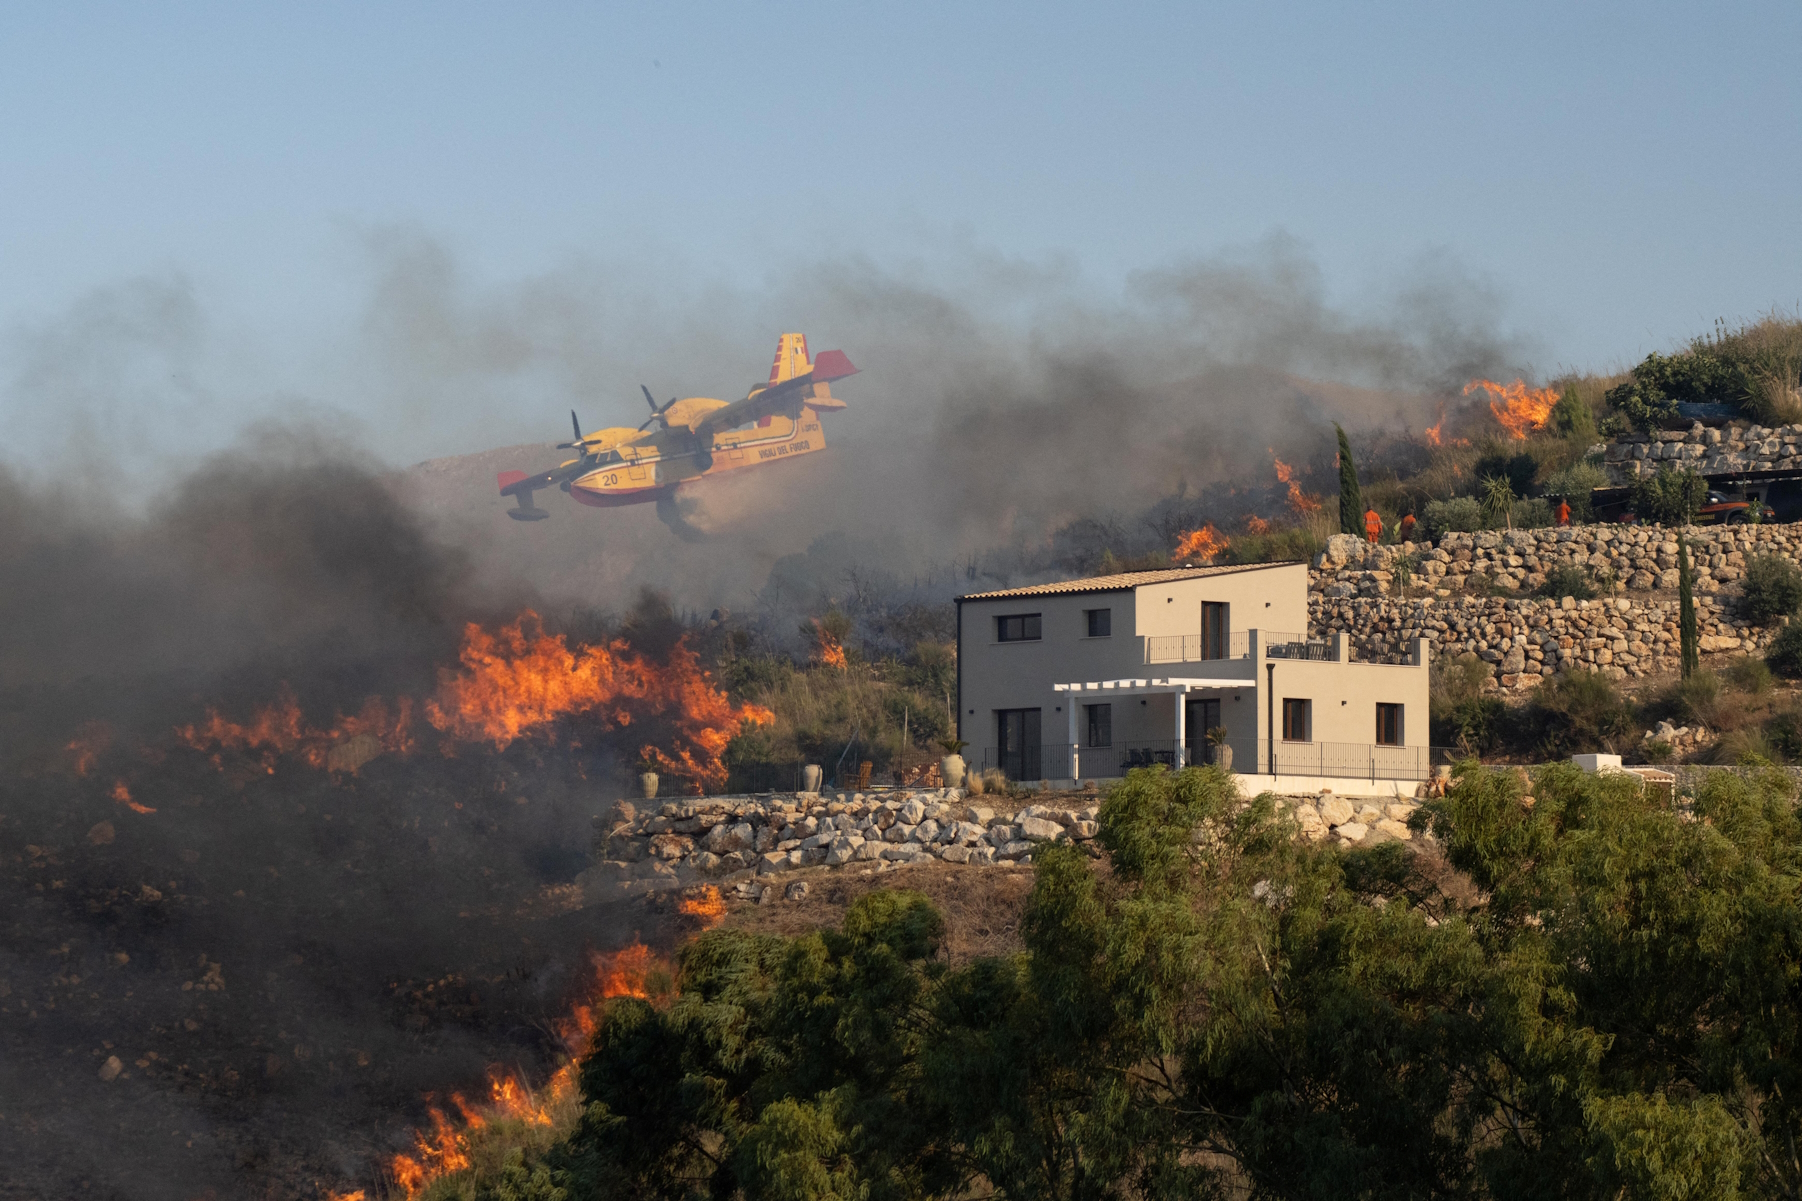 Ιταλία: Νεκροί από τις φωτιές στη Σικελία – Εκκενώθηκε ξενοδοχείο με 700 τουρίστες